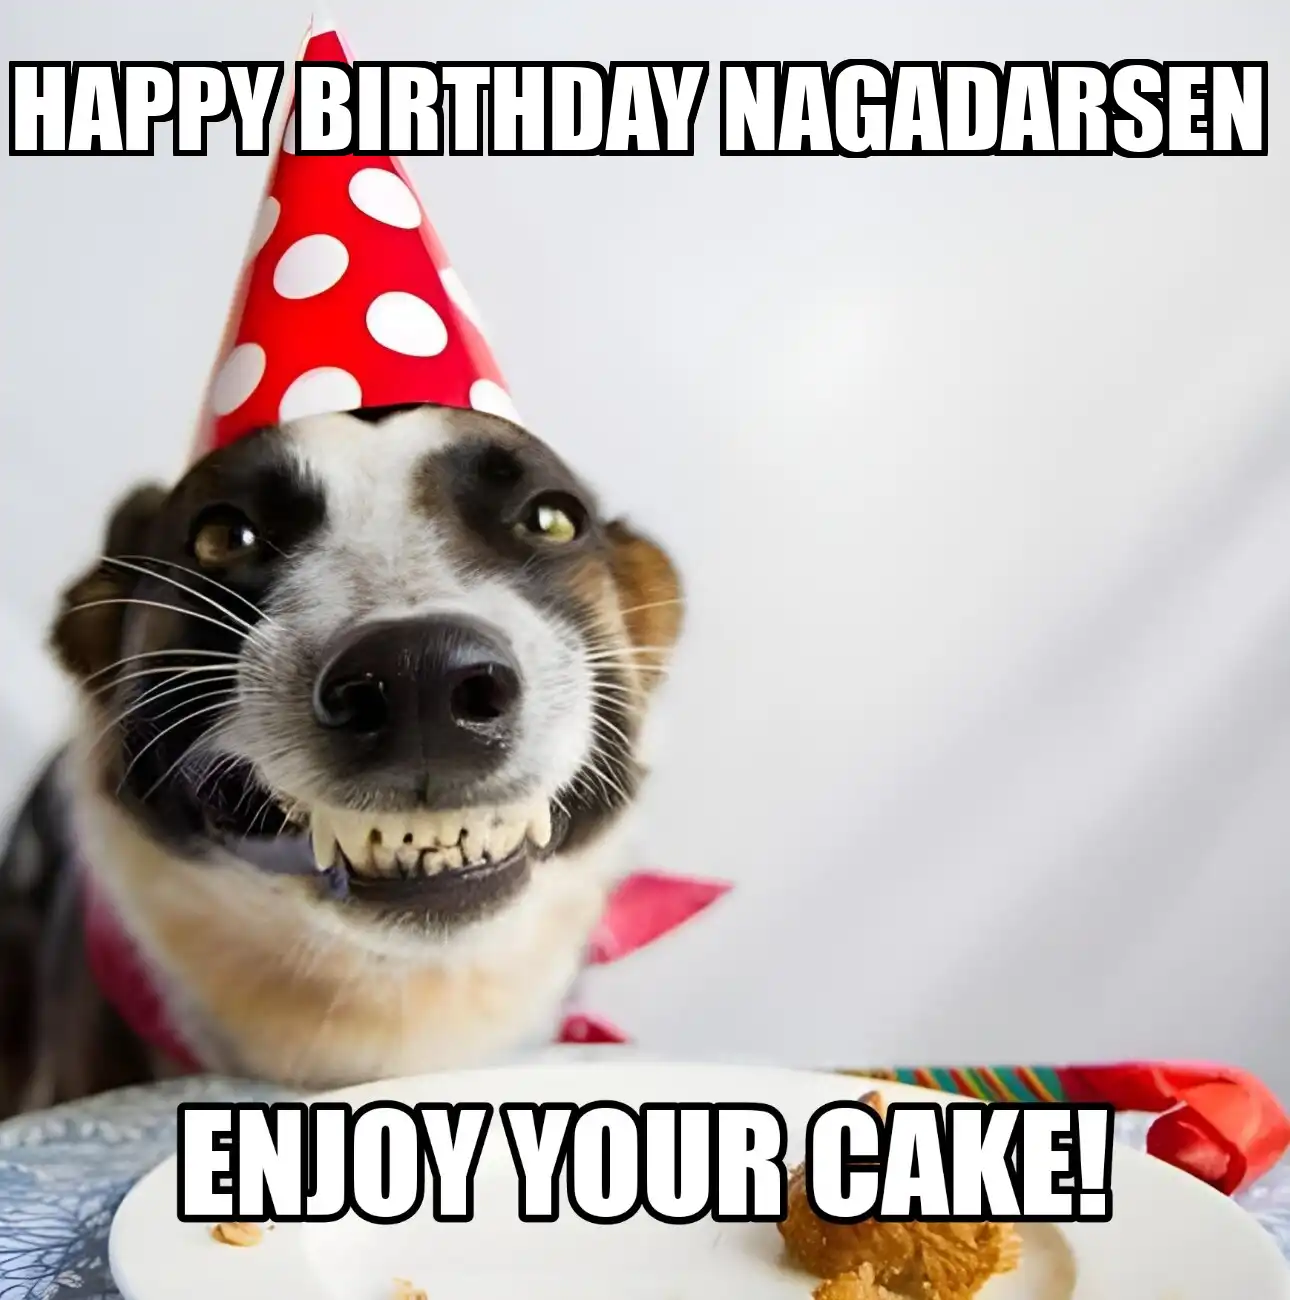 Happy Birthday Nagadarsen Enjoy Your Cake Dog Meme